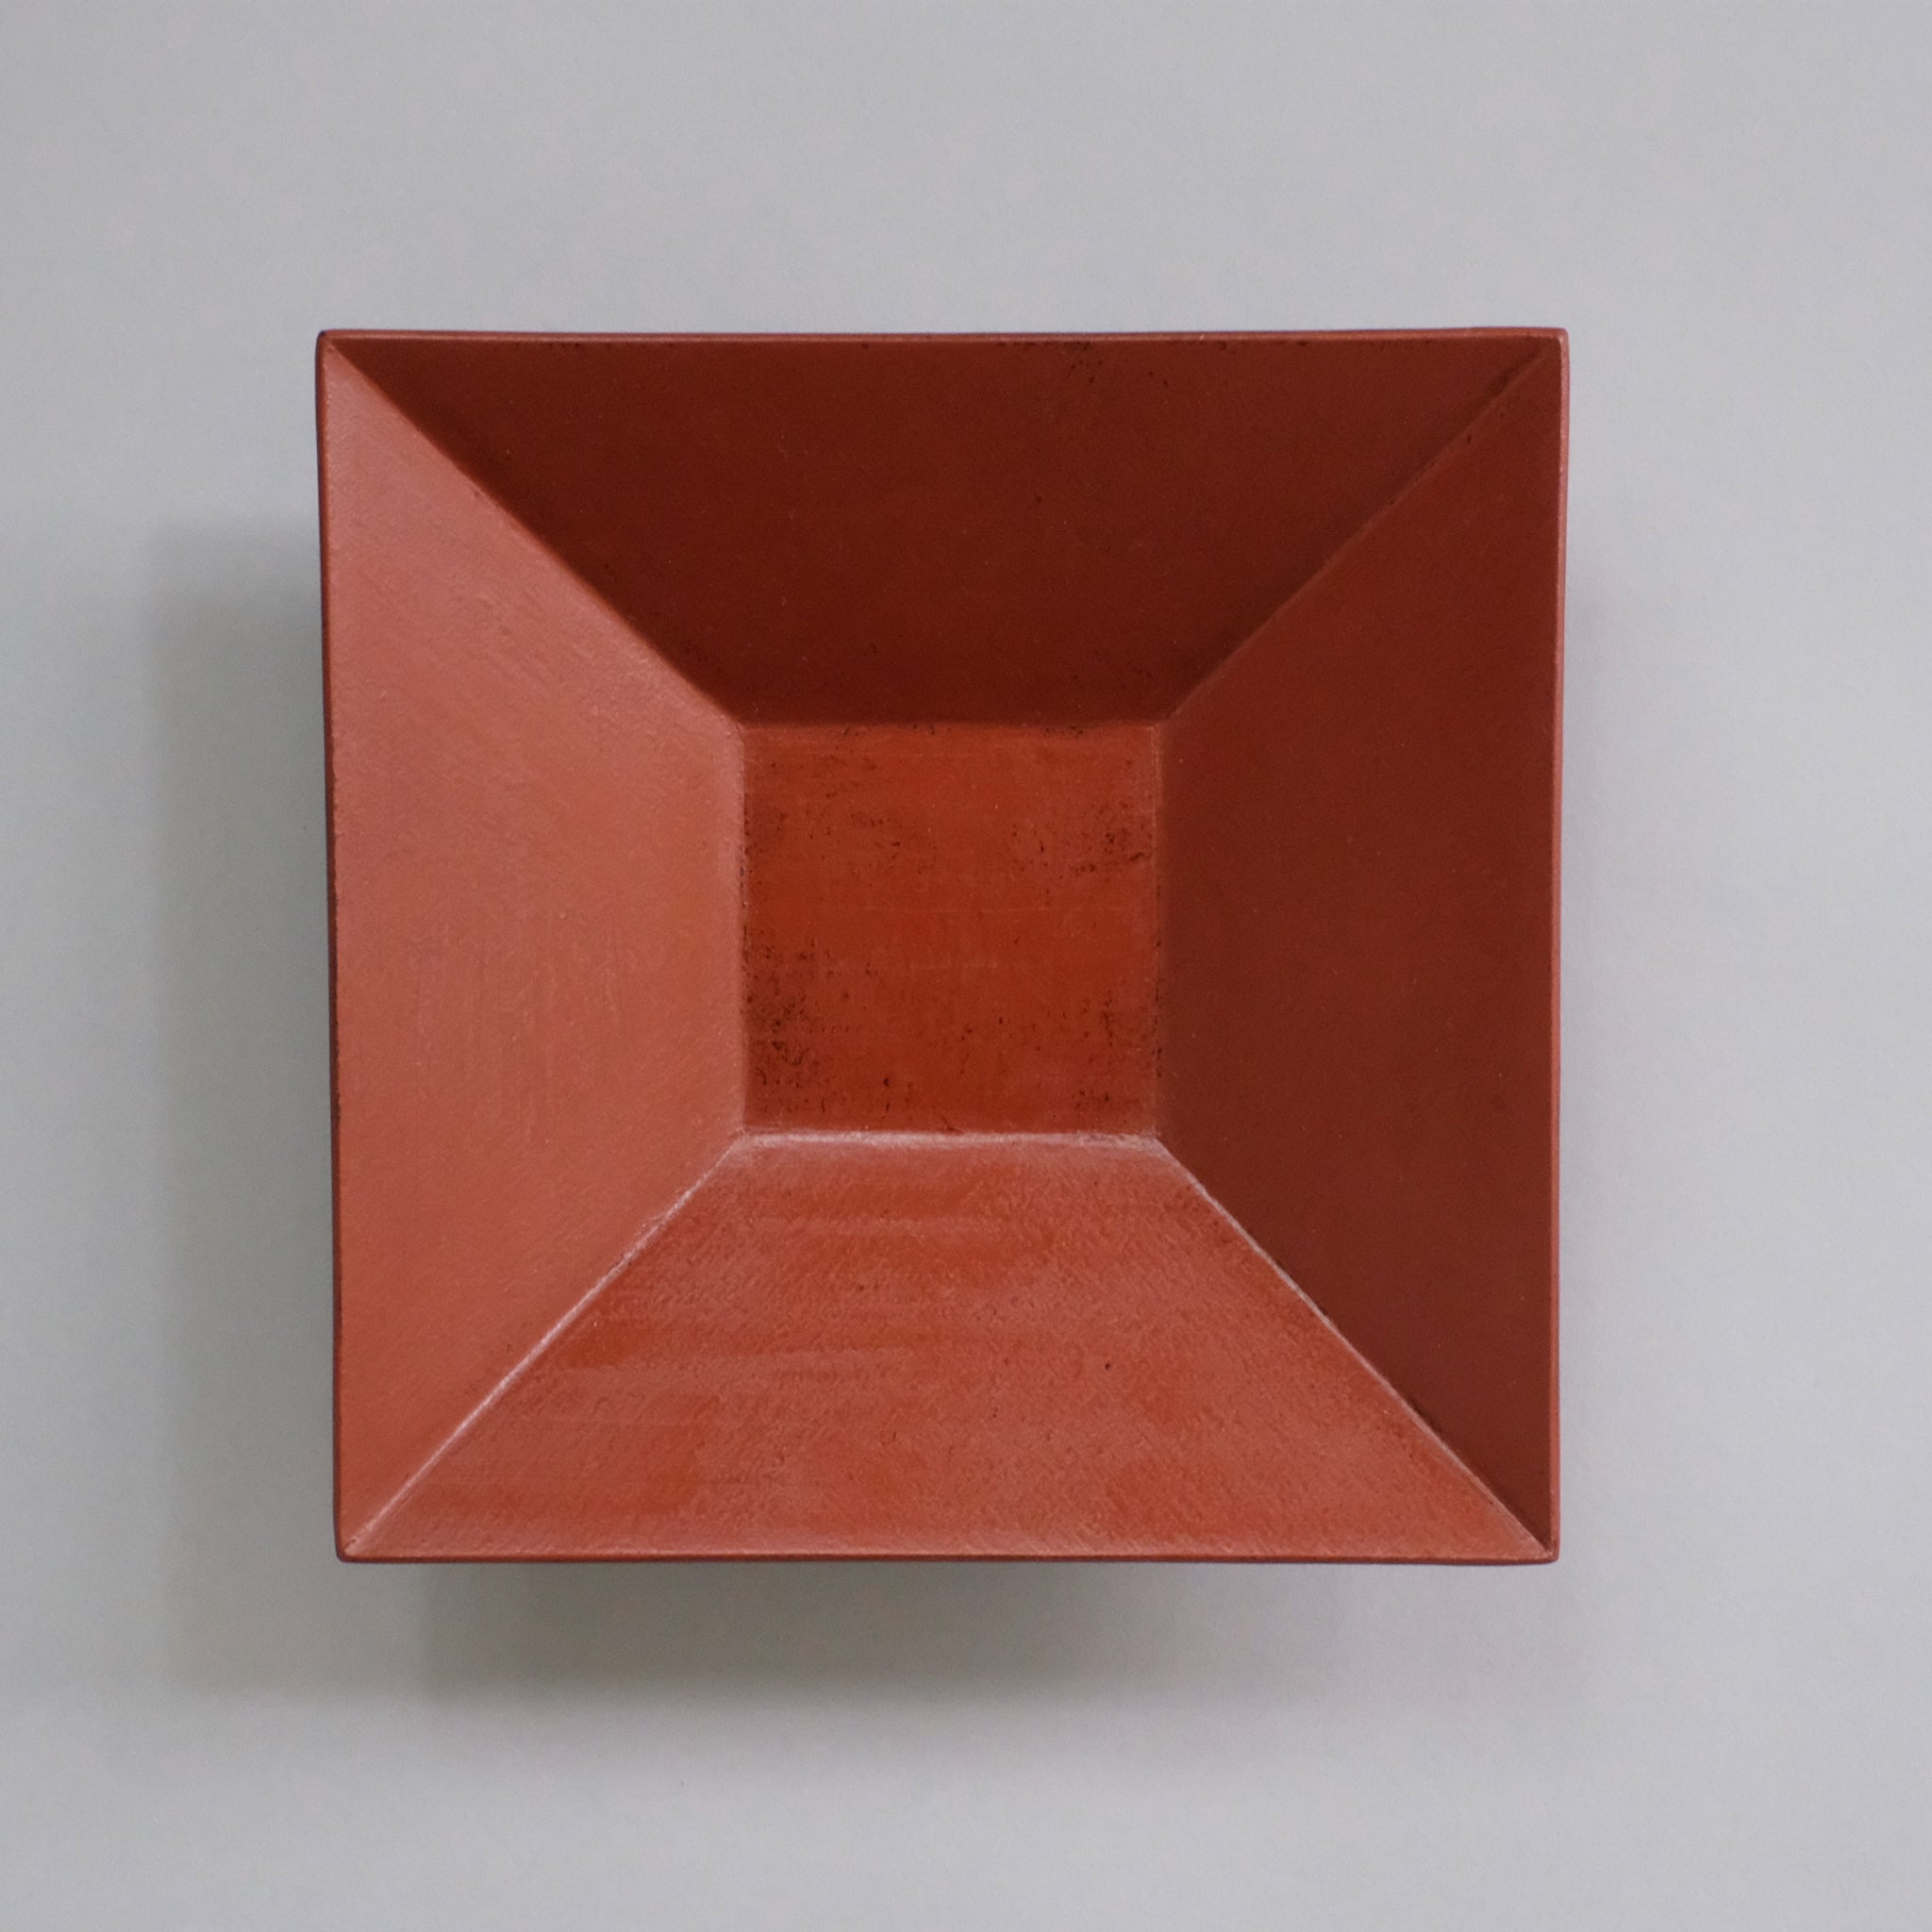 赤木明登 四方鉢 6寸 (赤) Akito Akagi Square bowl S-size ( Red 